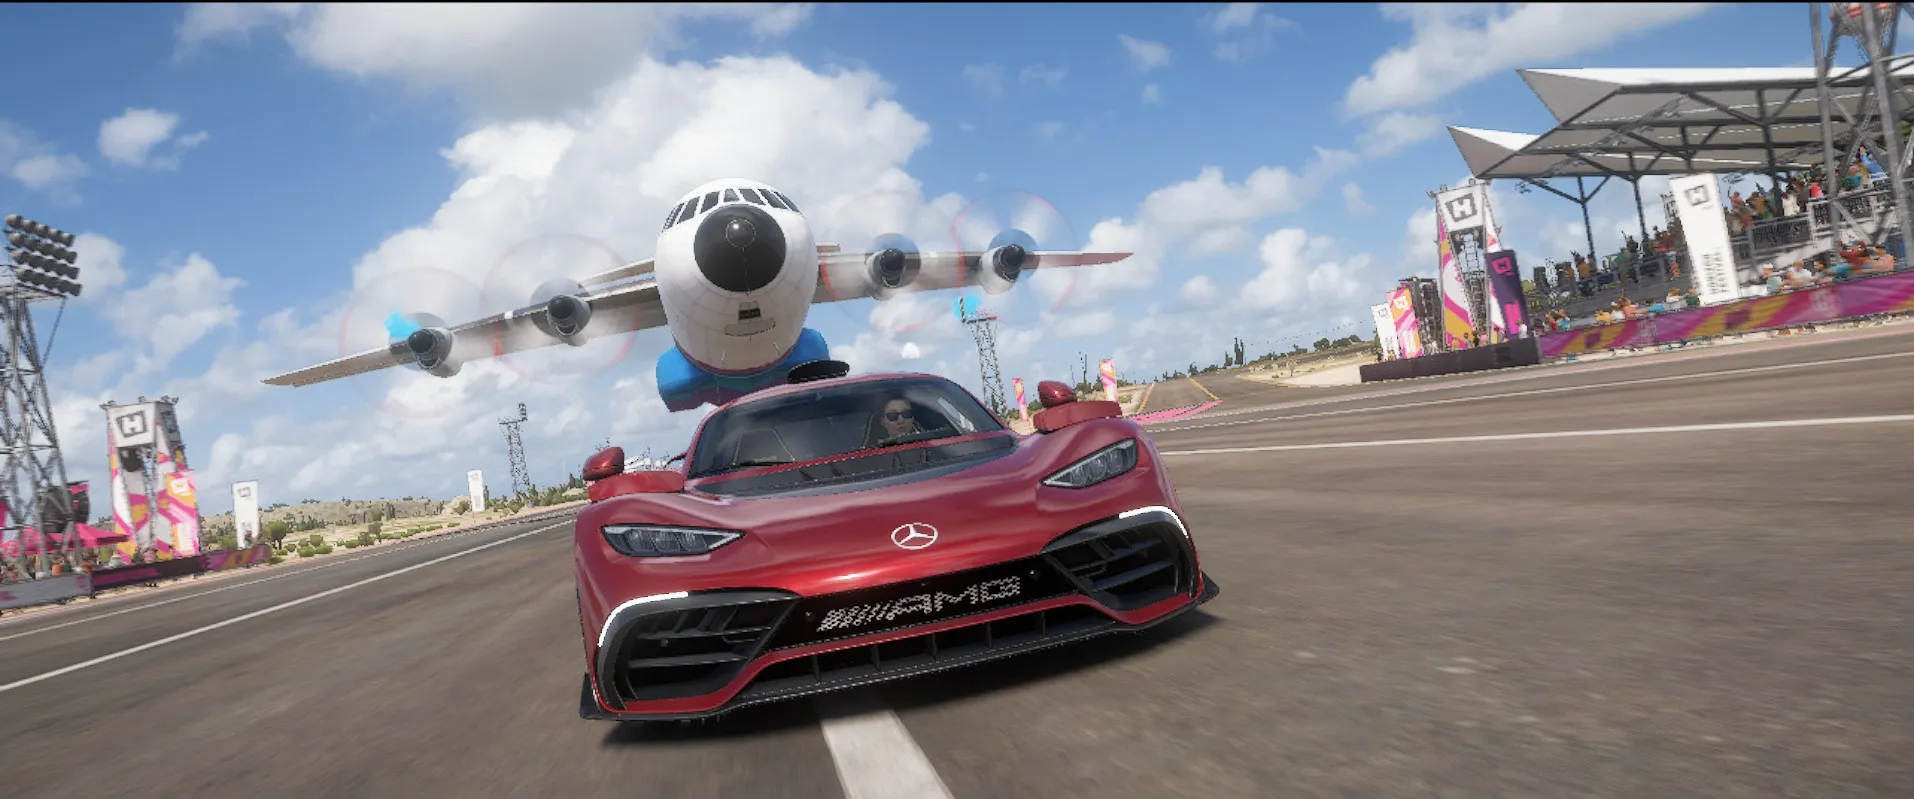 Forza Horizon 5 - Airplane Race Opener